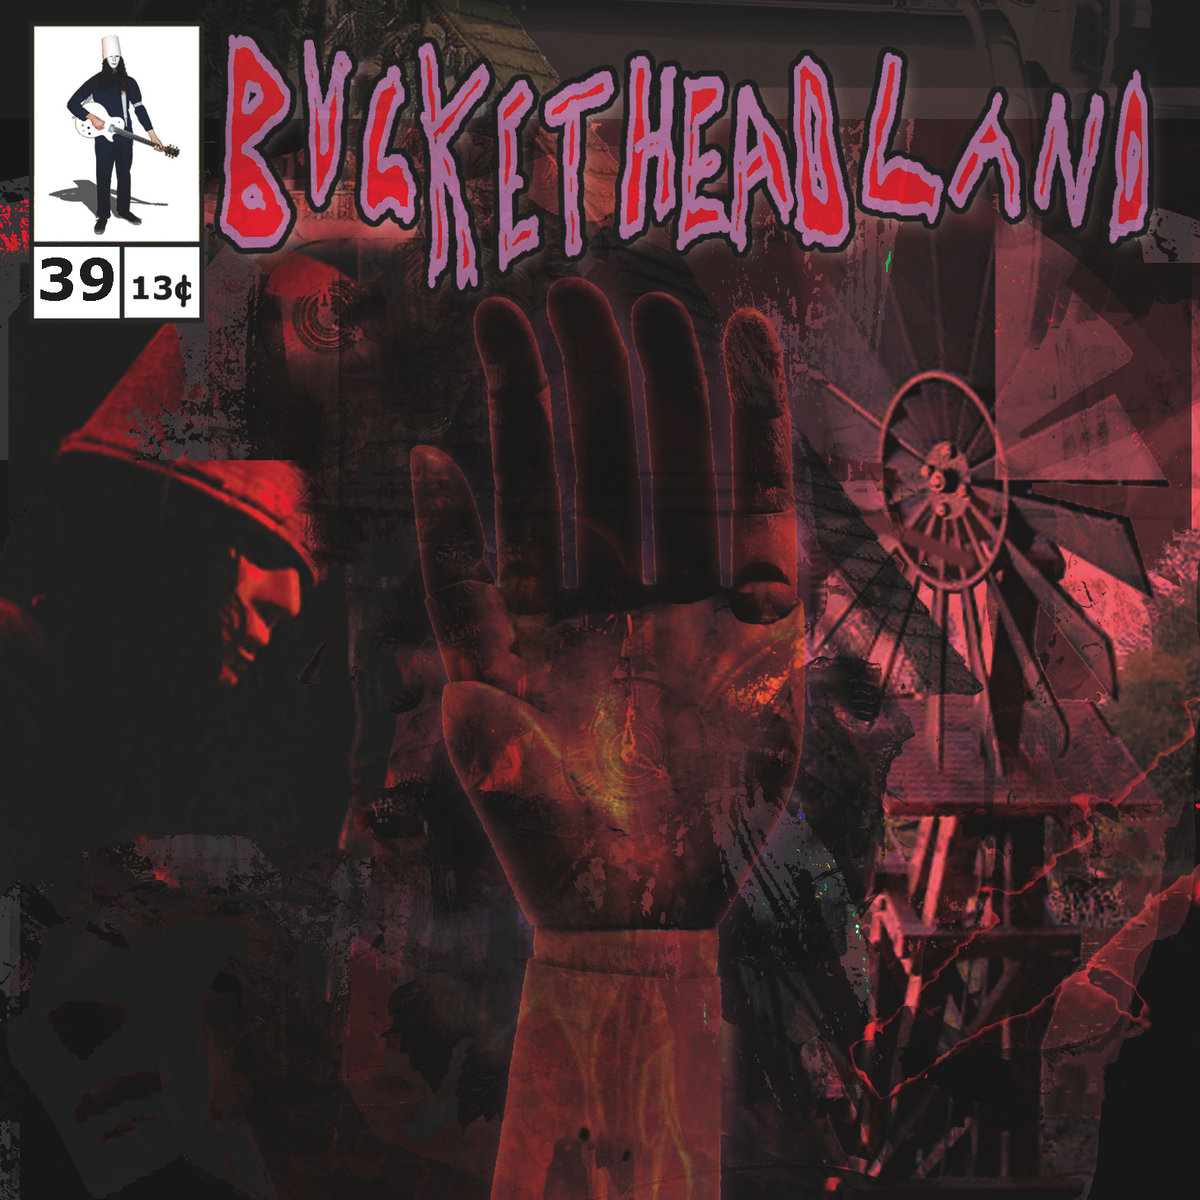 Buckethead - Pike 39: Twisterlend (2013)